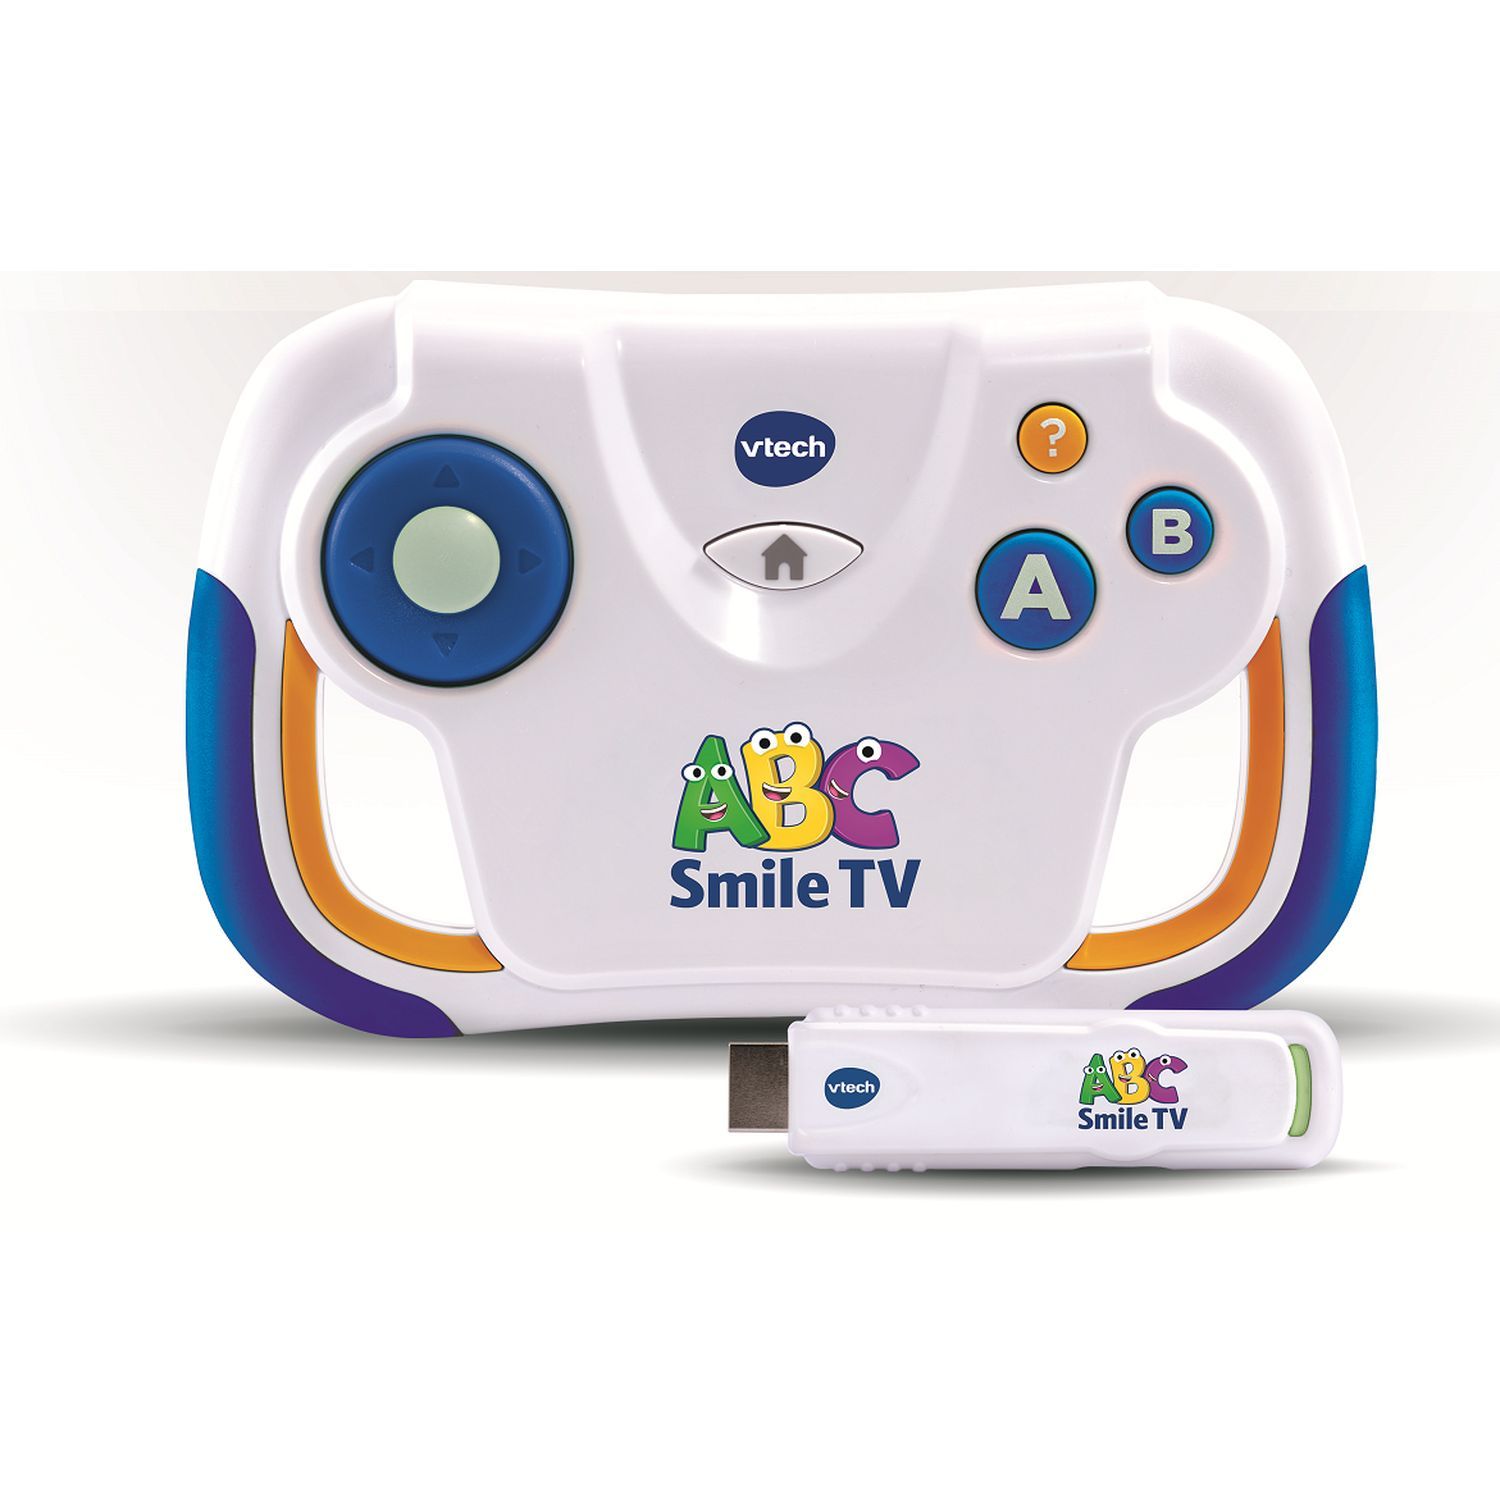 Promo Console ABC Smile Tv Vtech chez Auchan